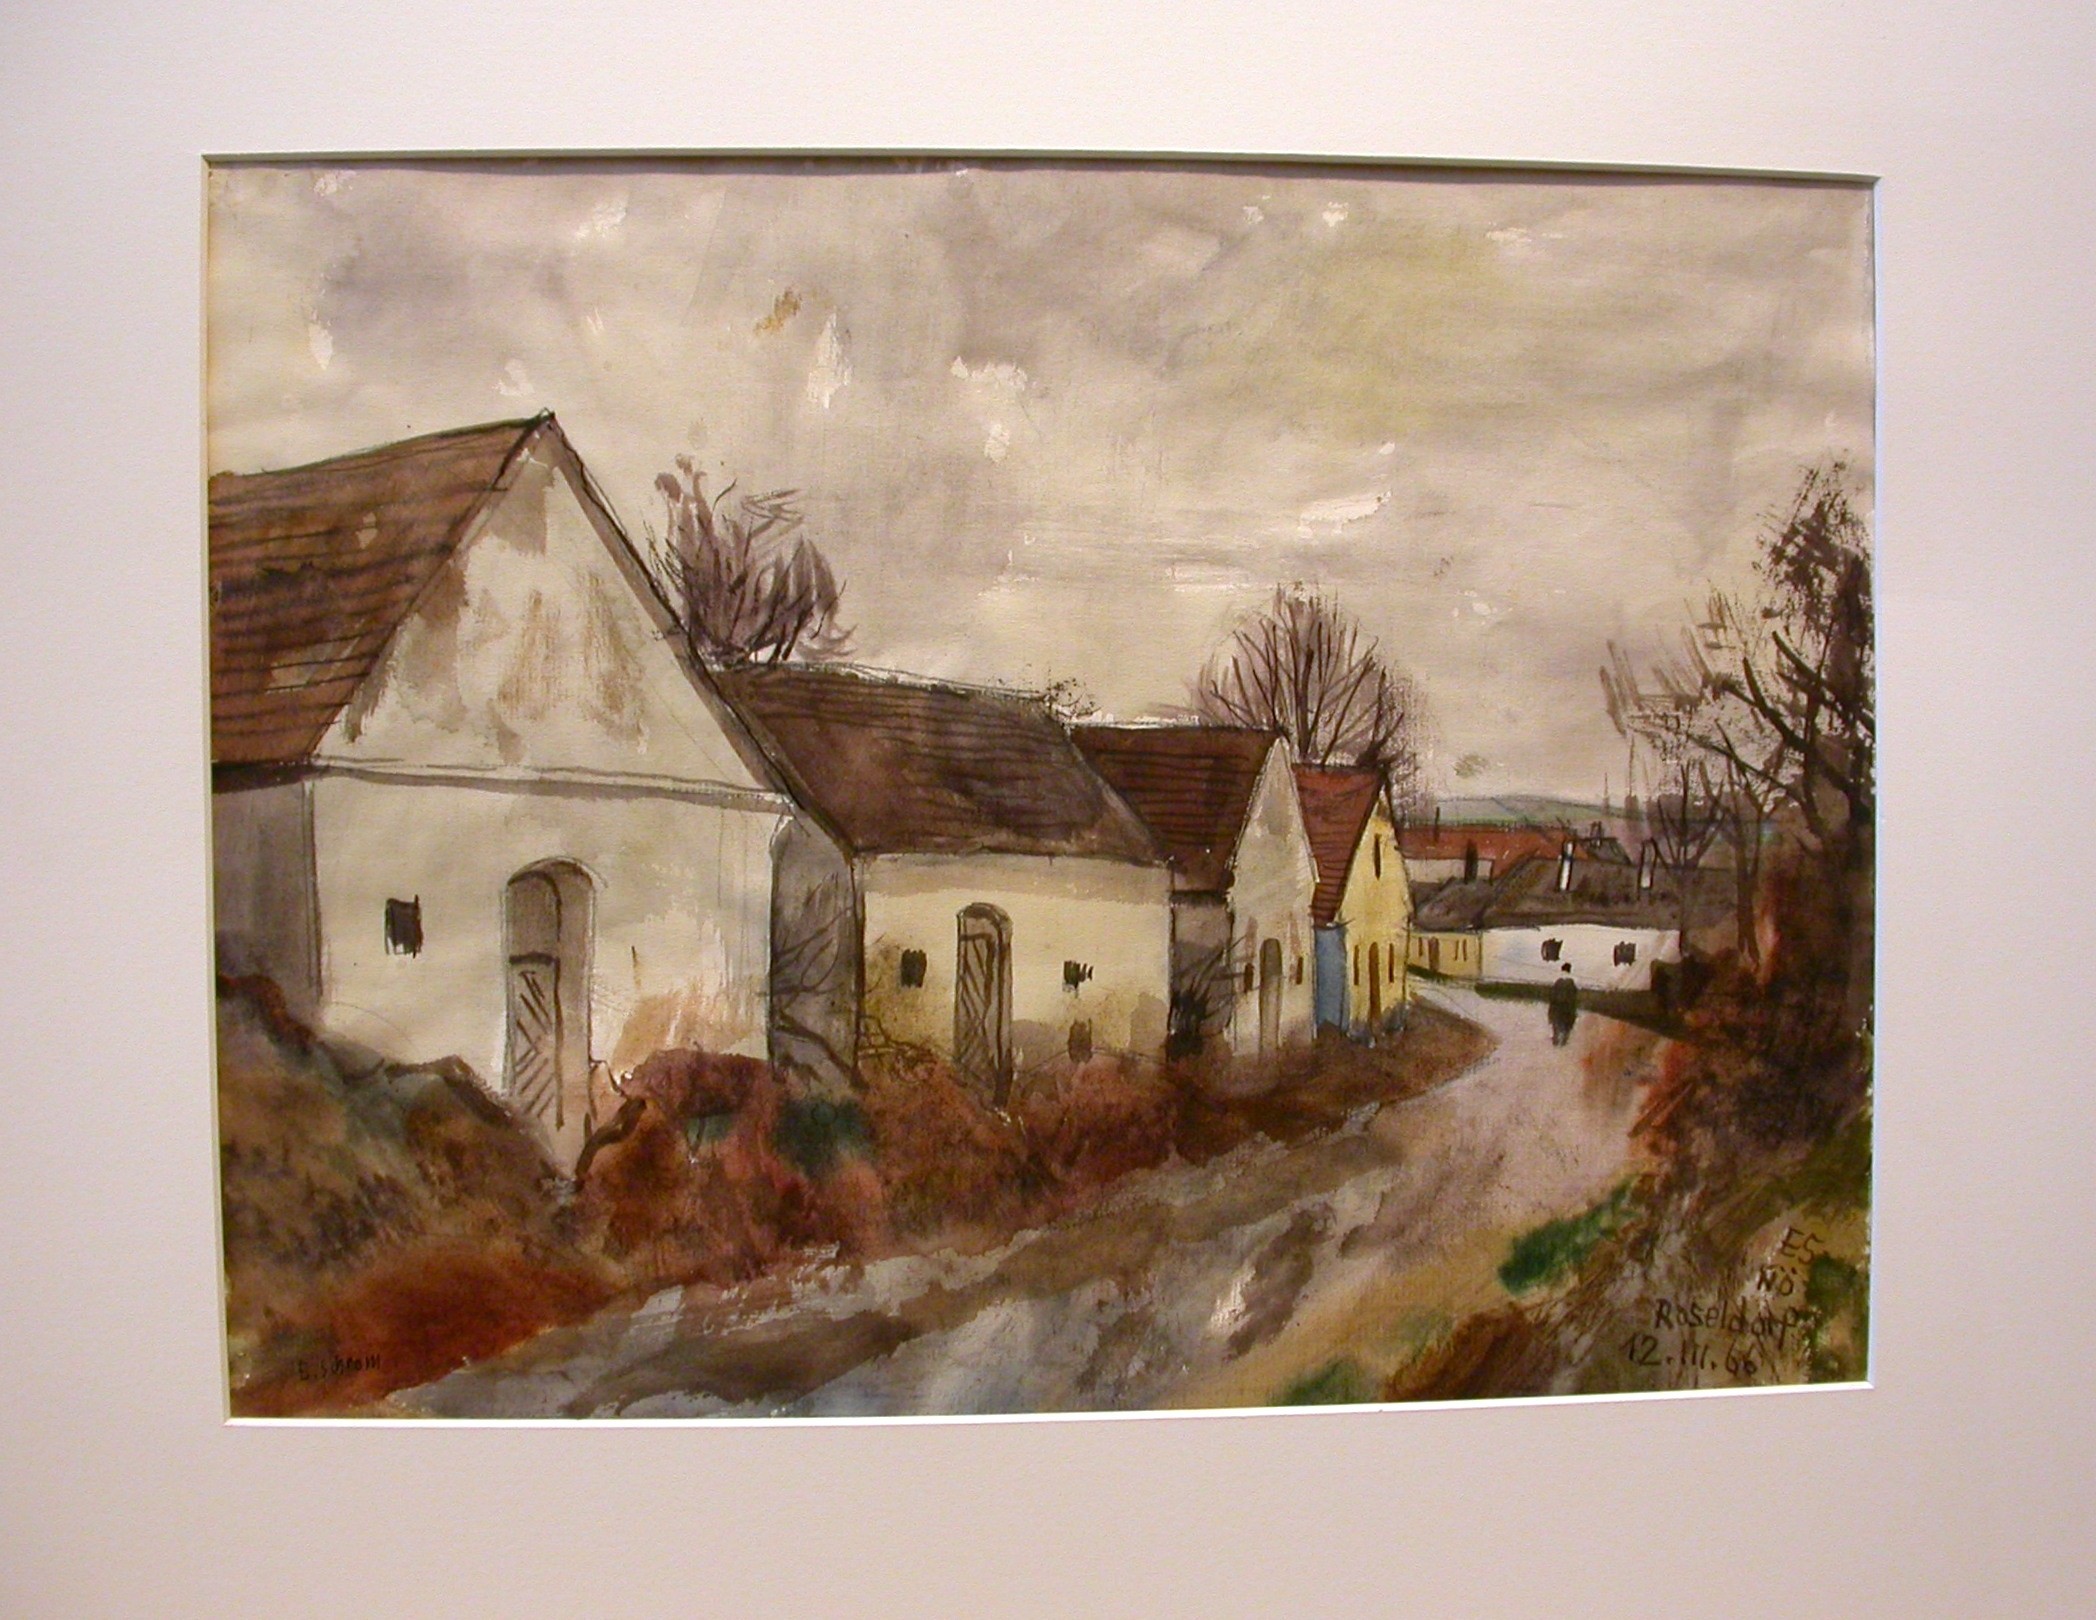 Schrom (1902 - 1969) "Roseldorf in Niederösterreich"